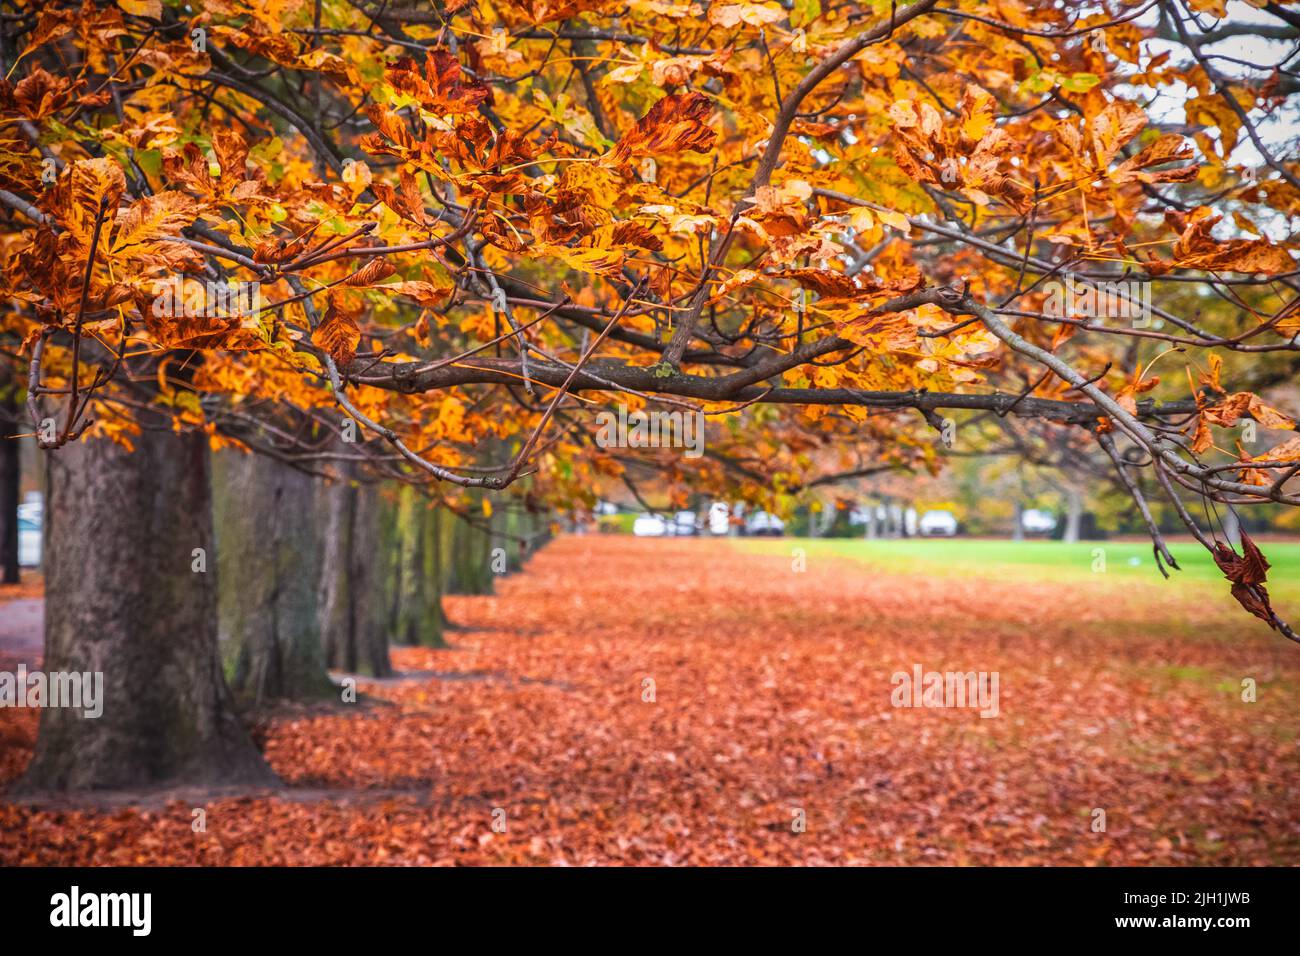 Seasonal landscape, autumn scene in Greenwich park, London Stock Photo